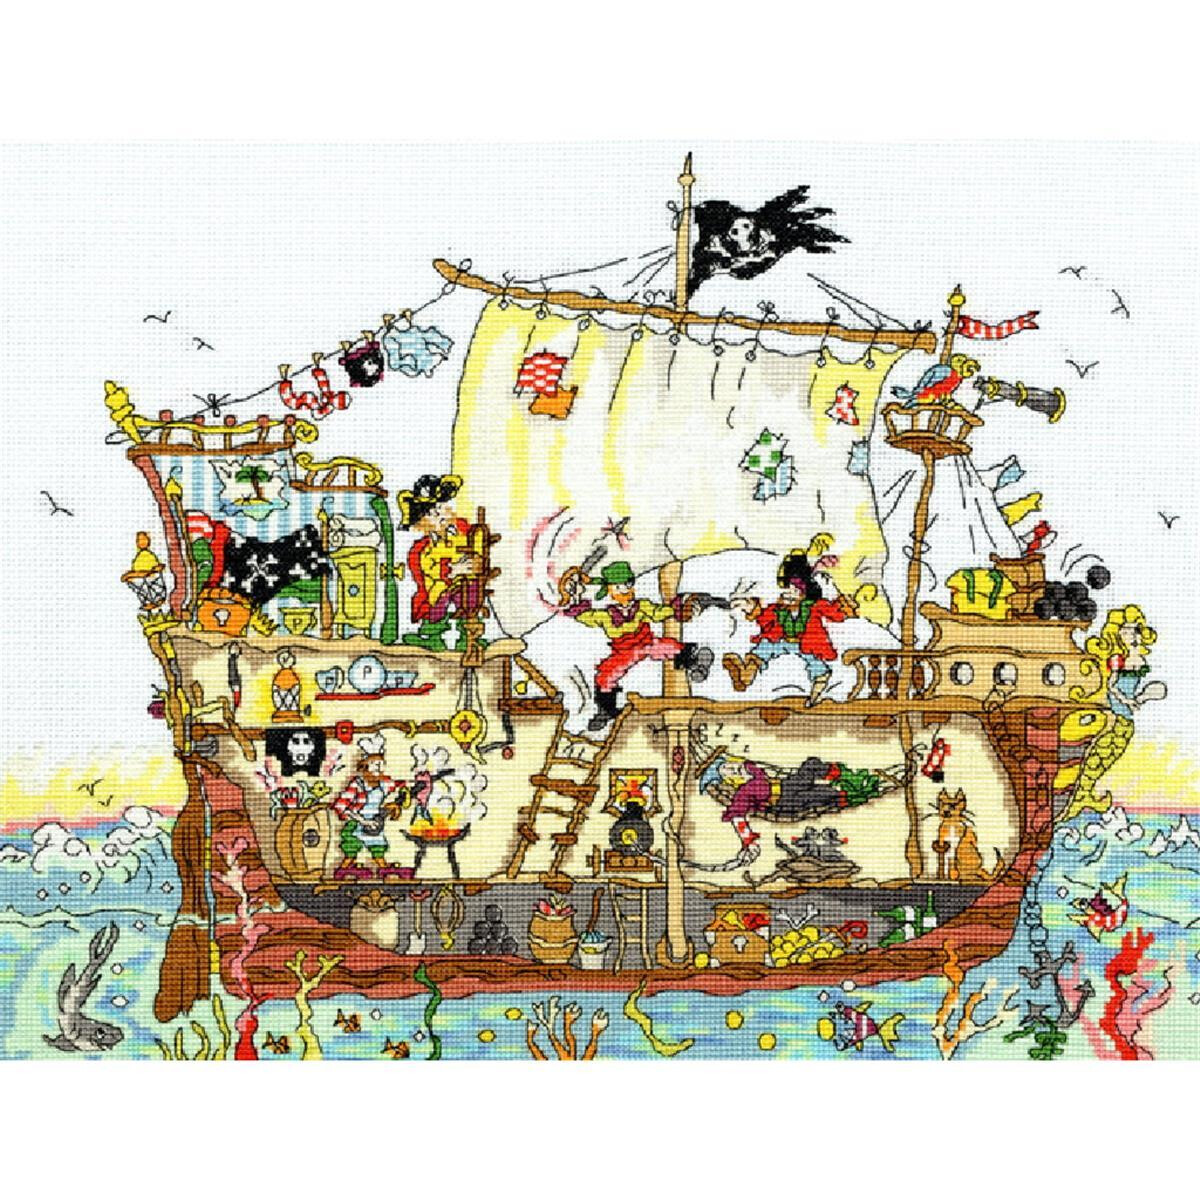 Иллюстрированный пиратский корабль в море с различными...